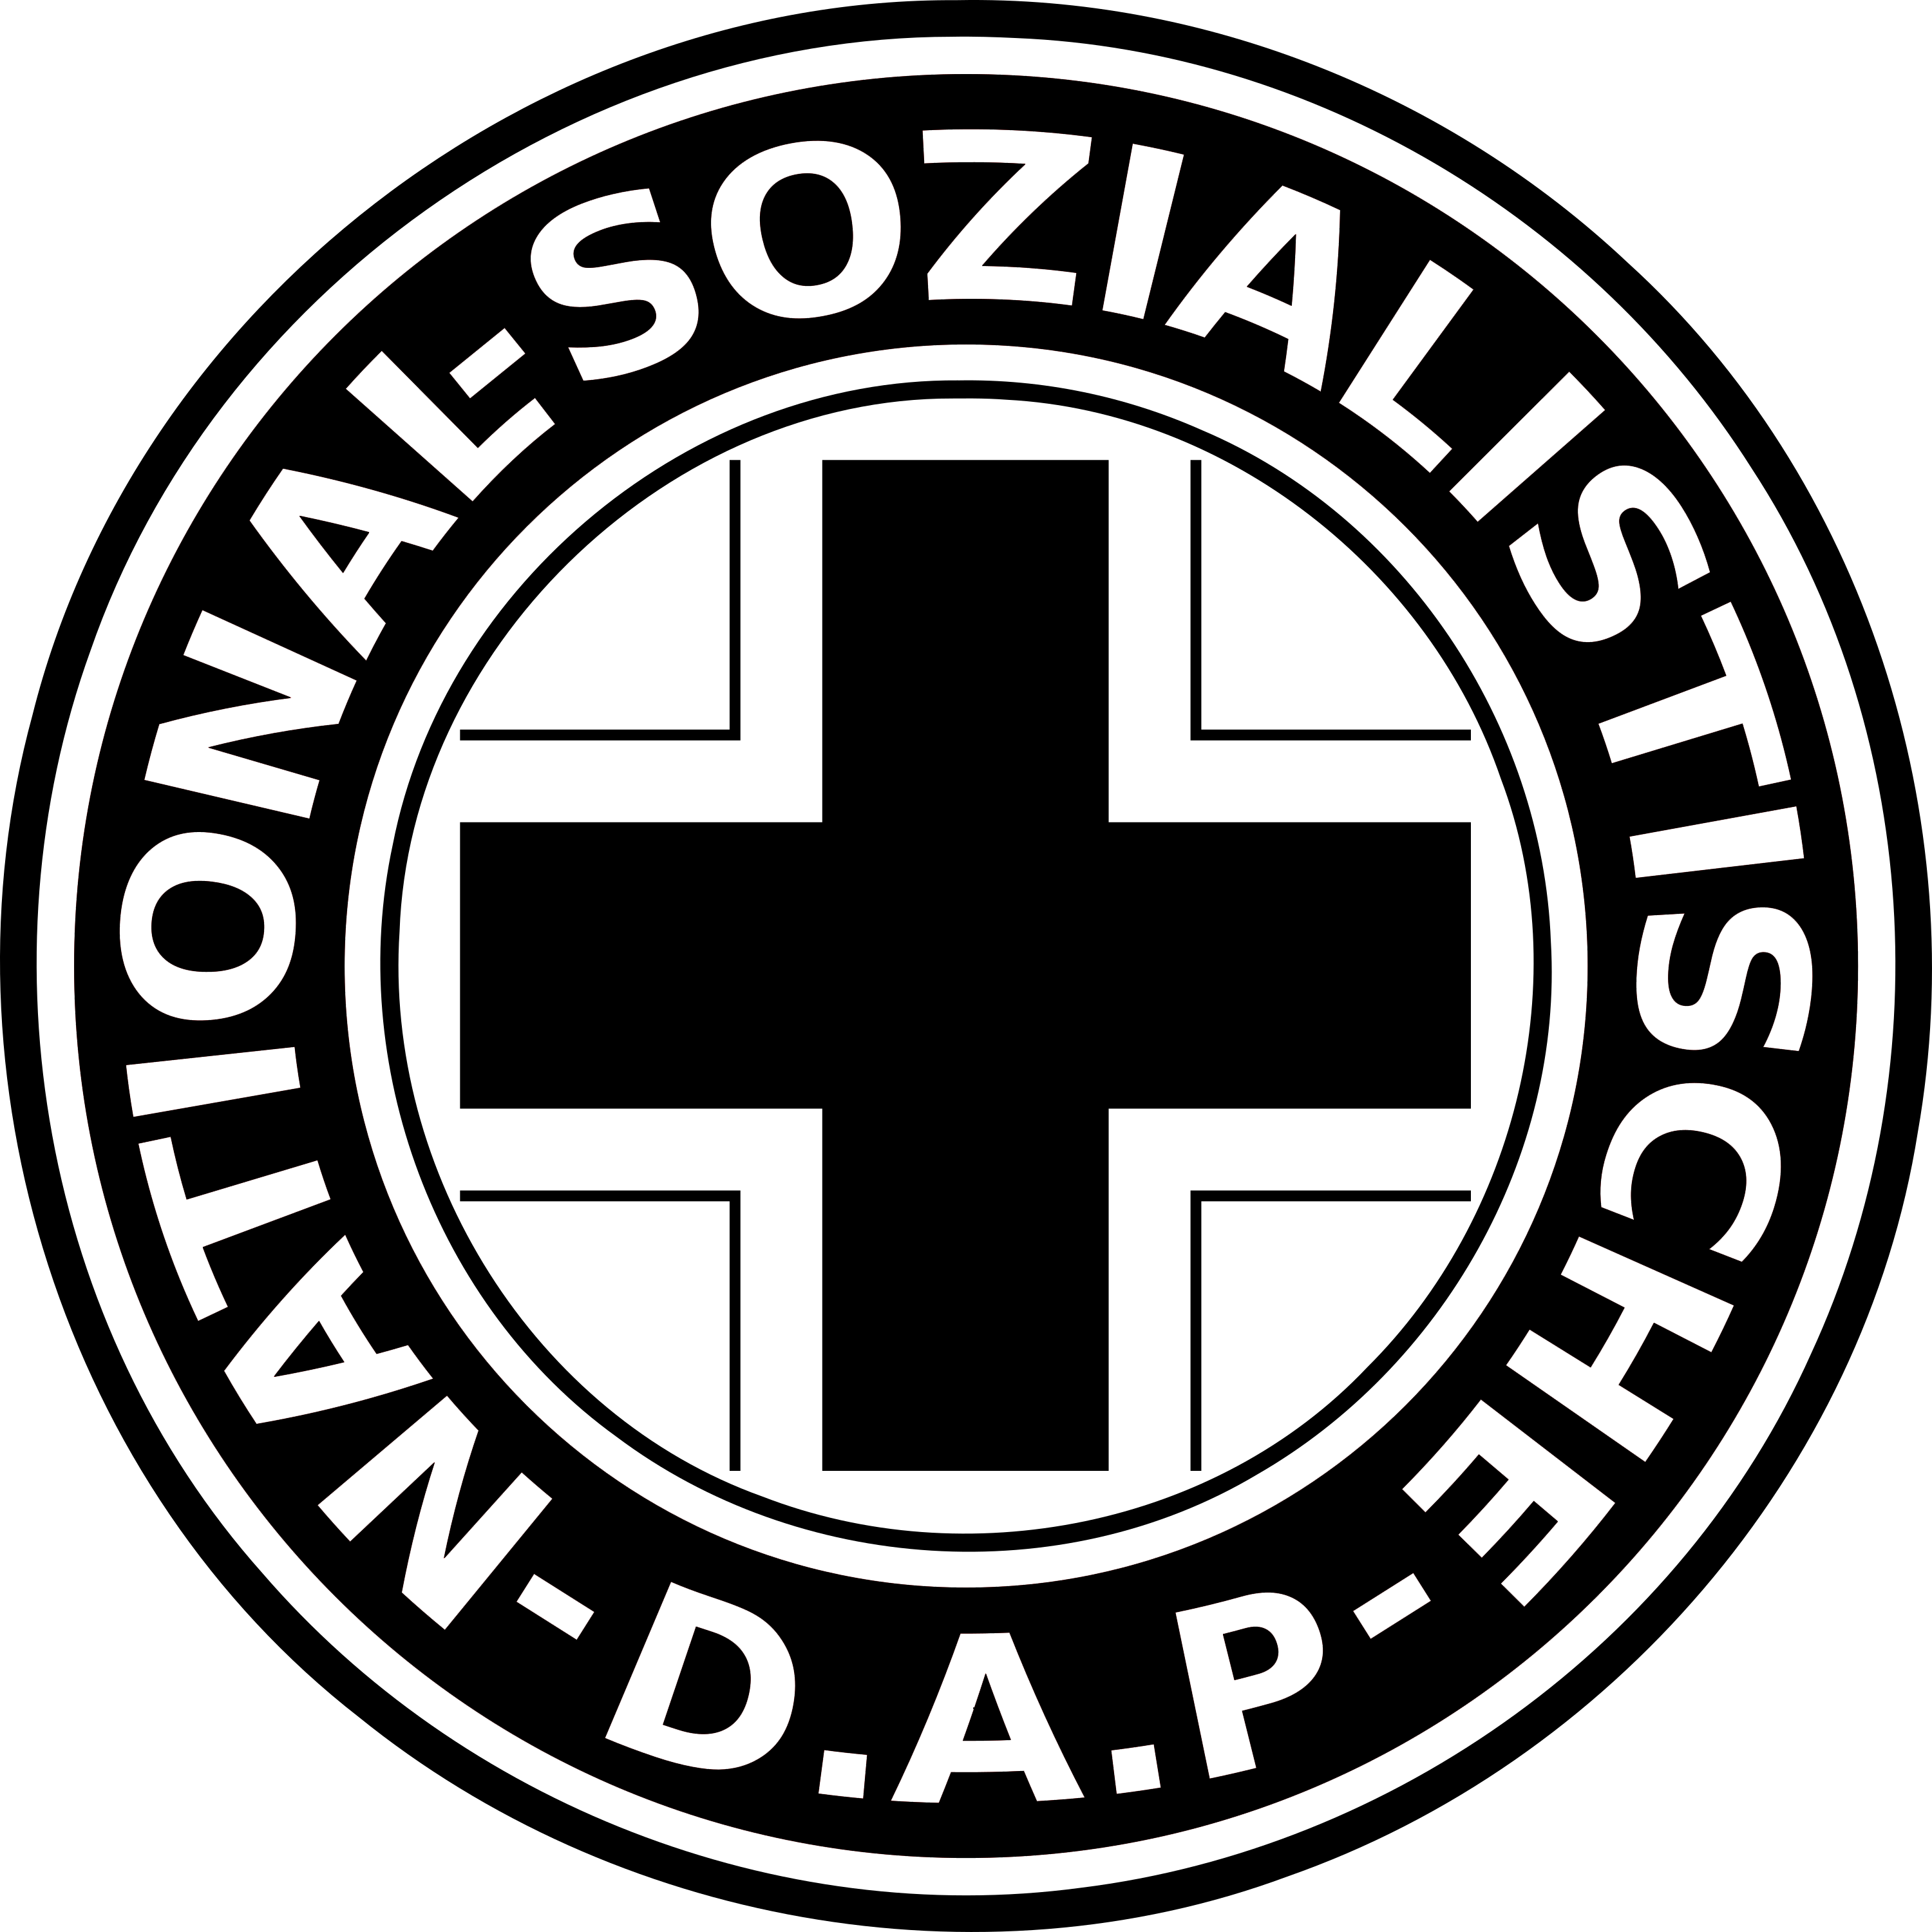 NSDAP Logo Transparent Picture